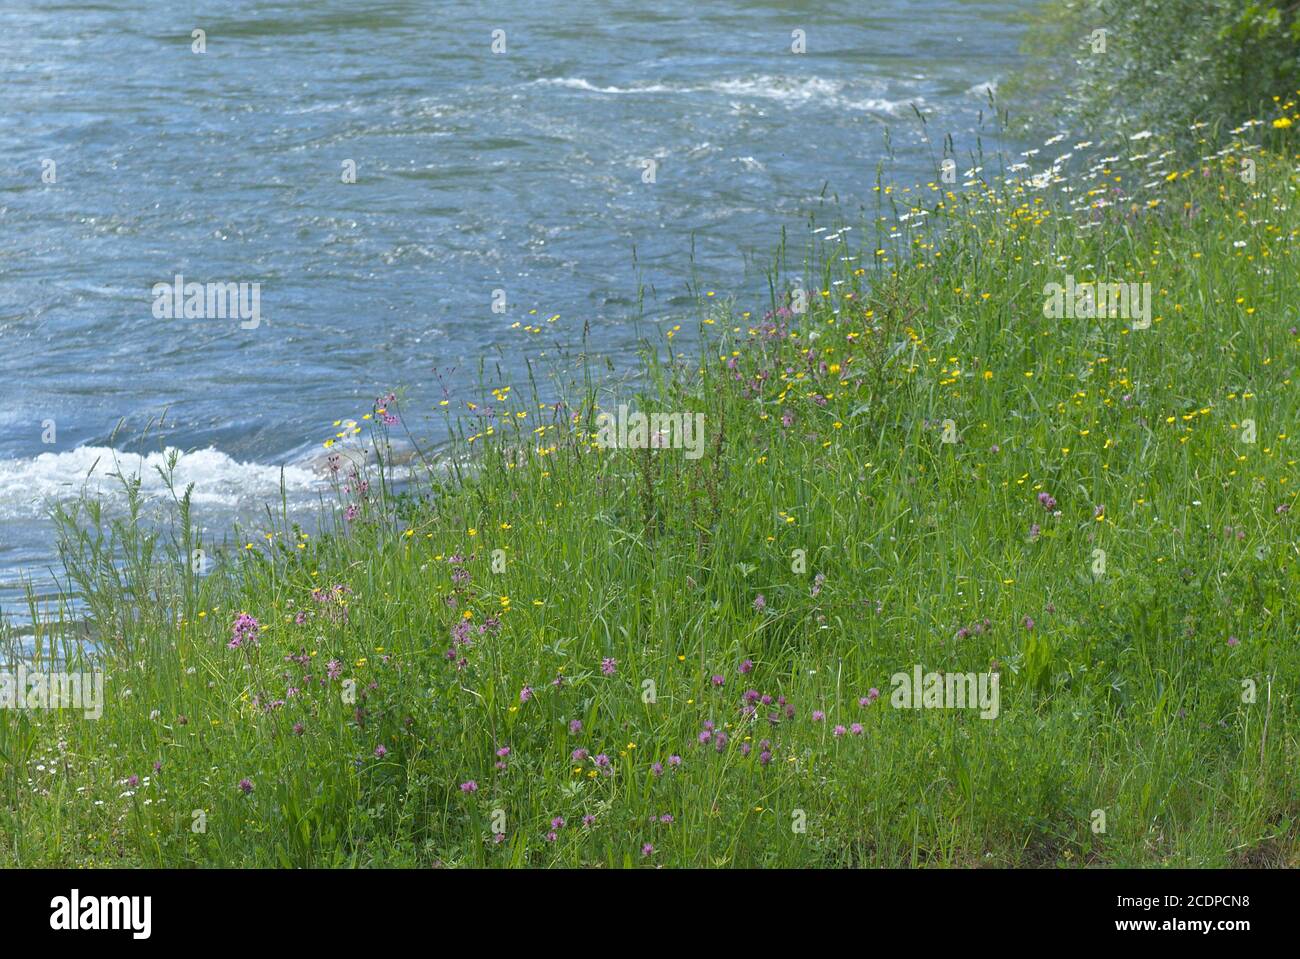 Blumenwiese am Ufer eines Flusses Stock Photo